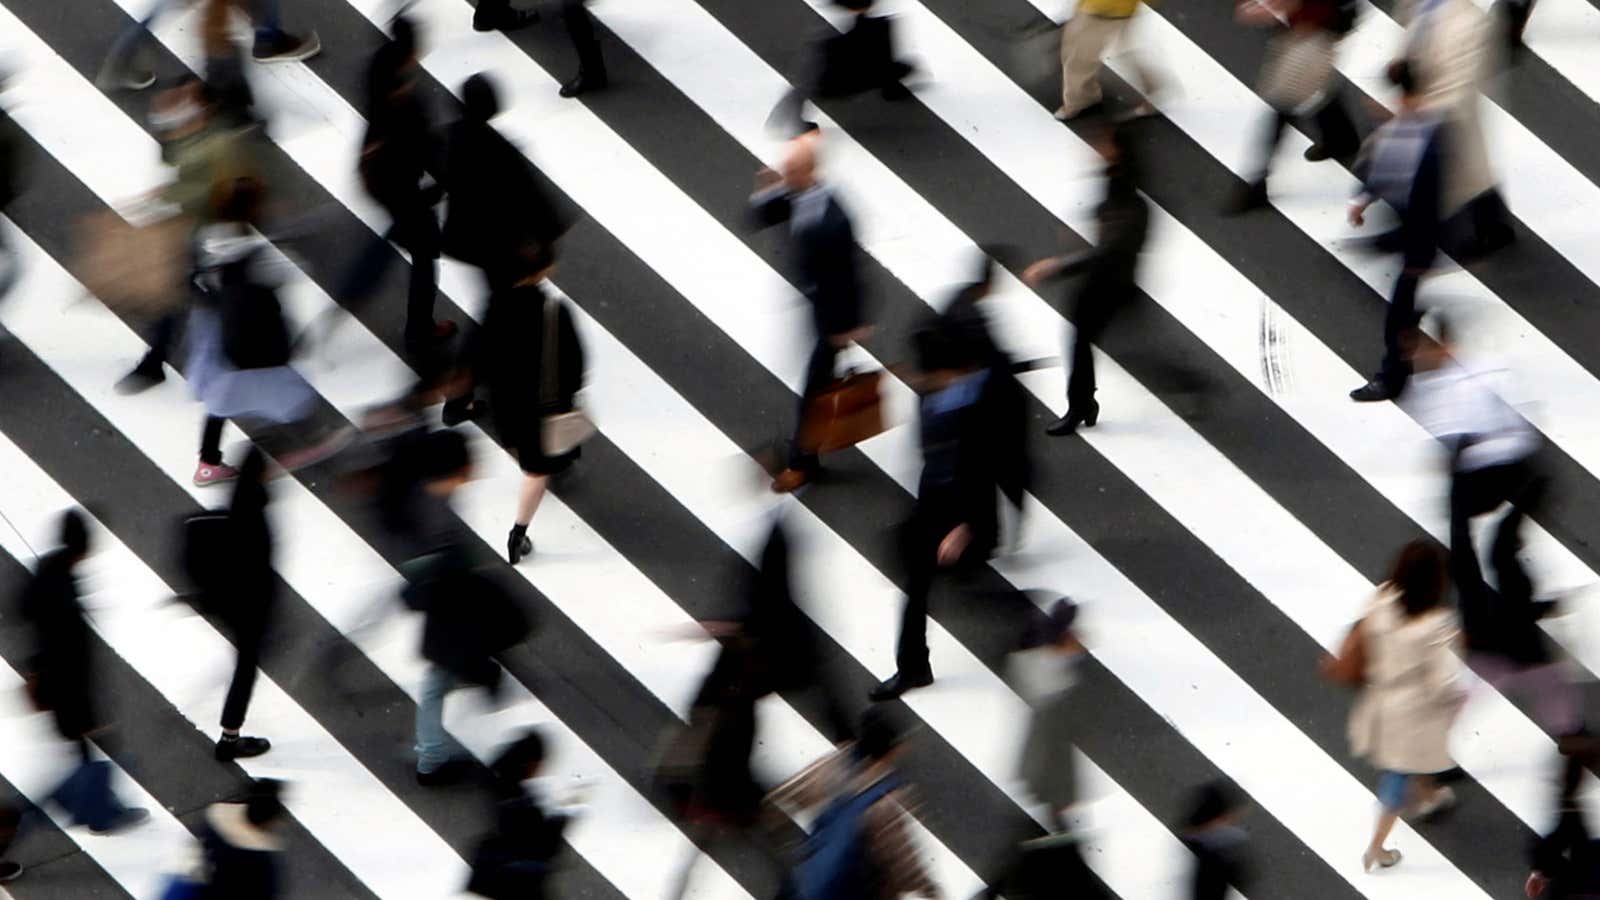 People cross a street in Tokyo March 18, 2015.